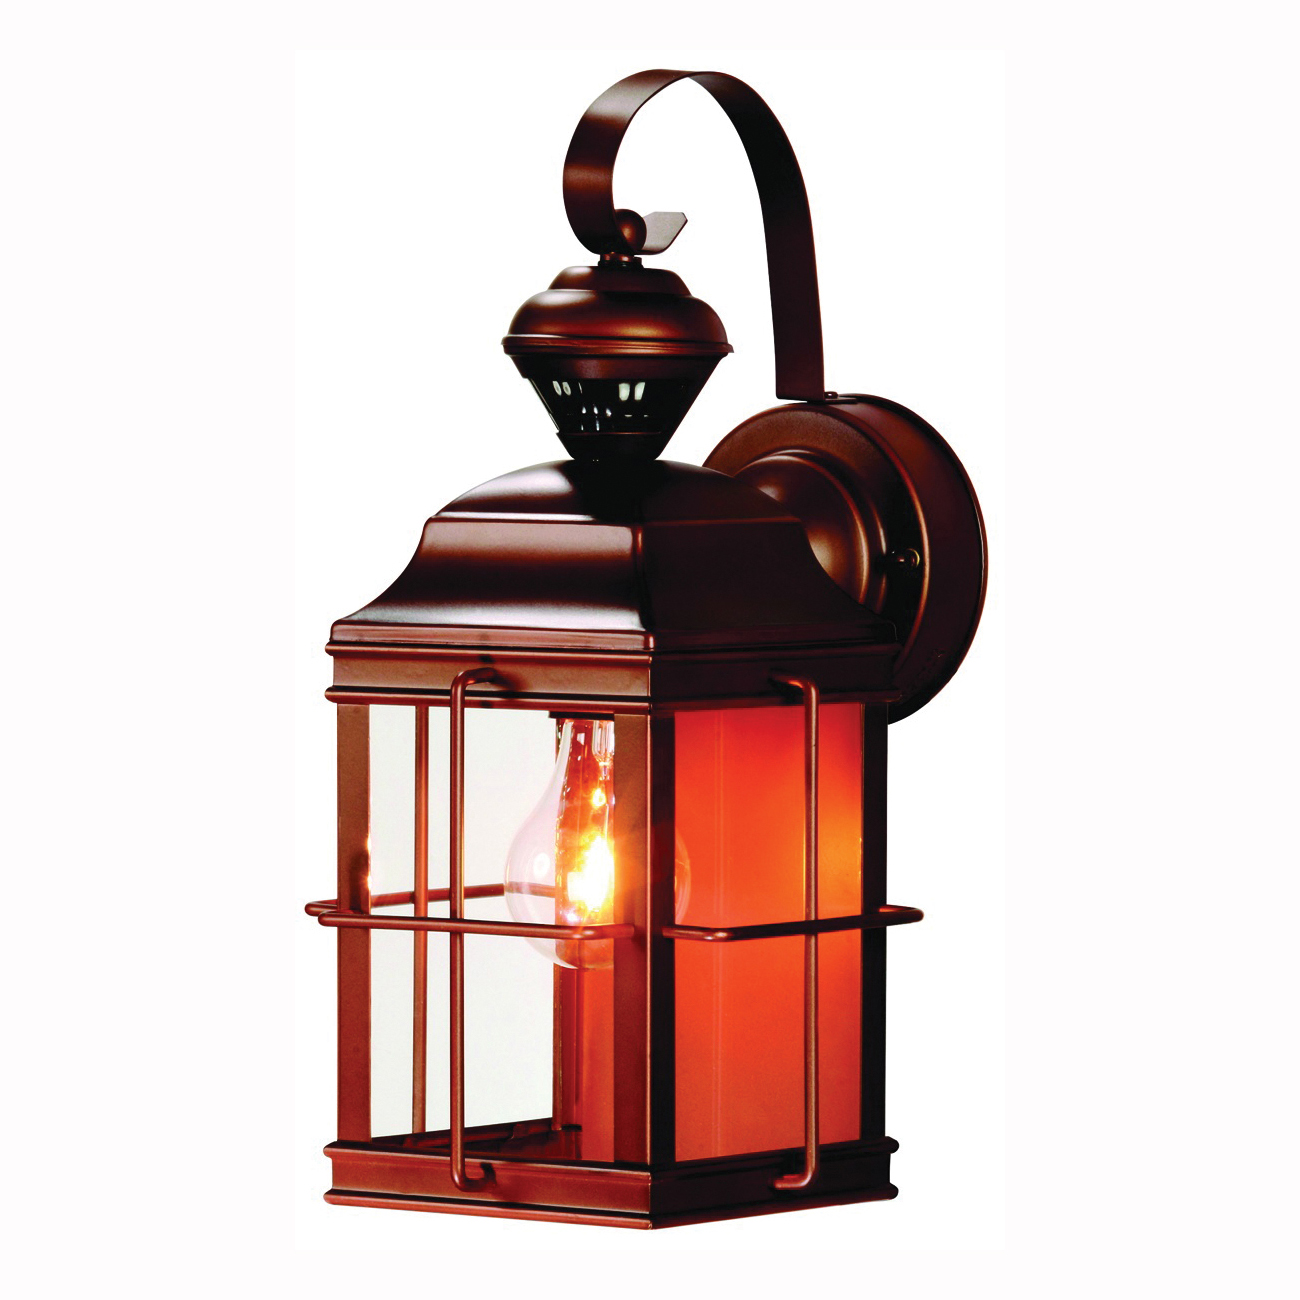 Dualbrite Series HZ-4144-AZ Motion Activated Decorative Light, 120 V, 100 W, Incandescent Lamp